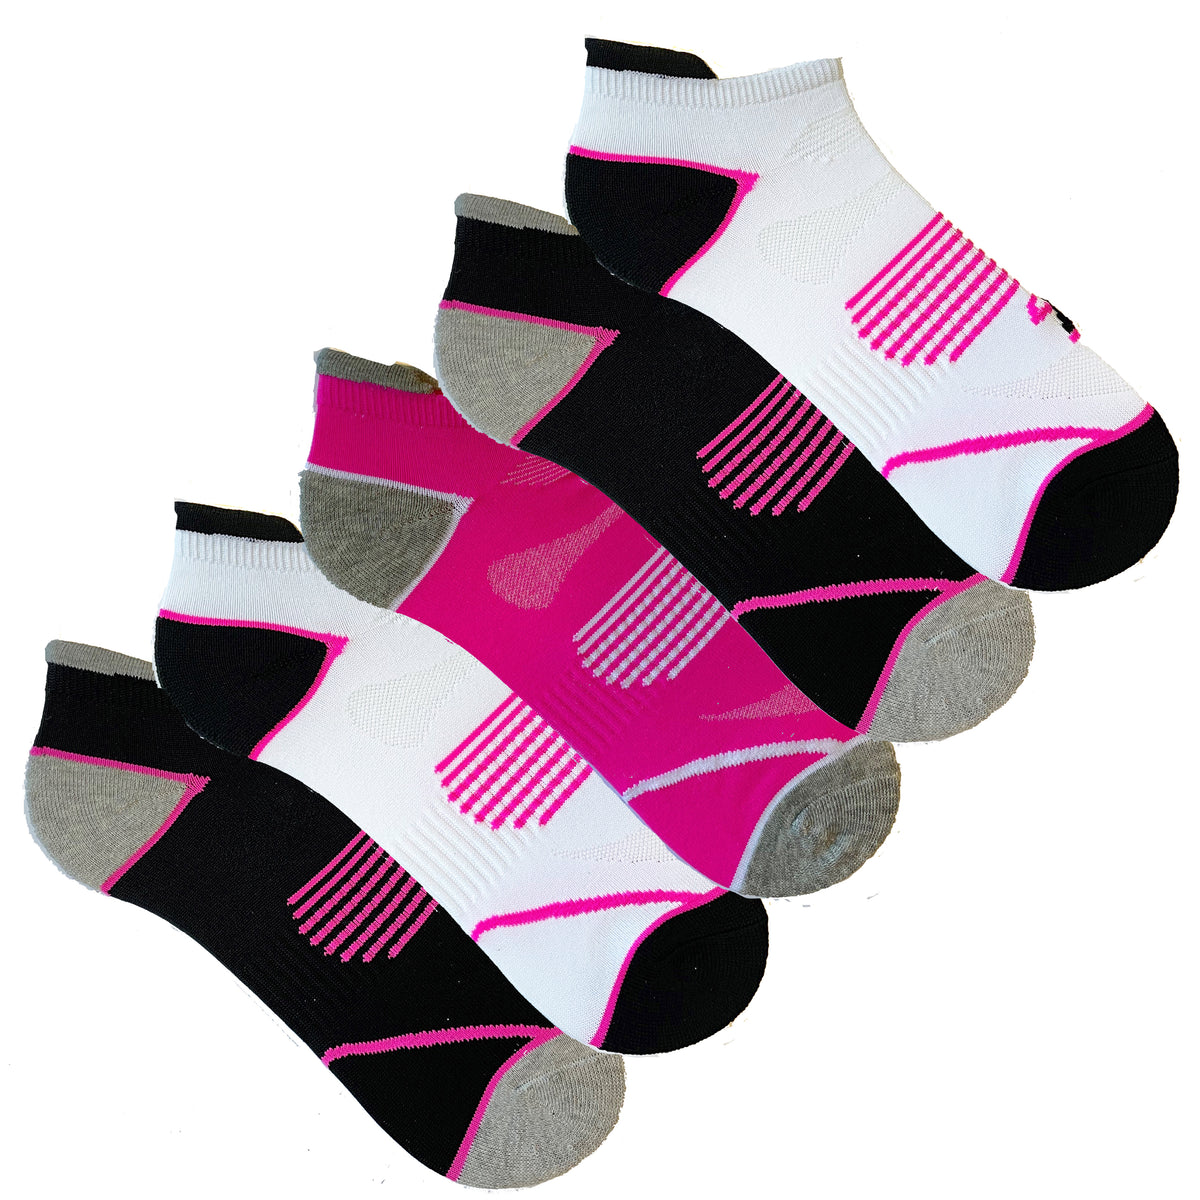 Technisocks Trainer Liner Socks 5 Pack